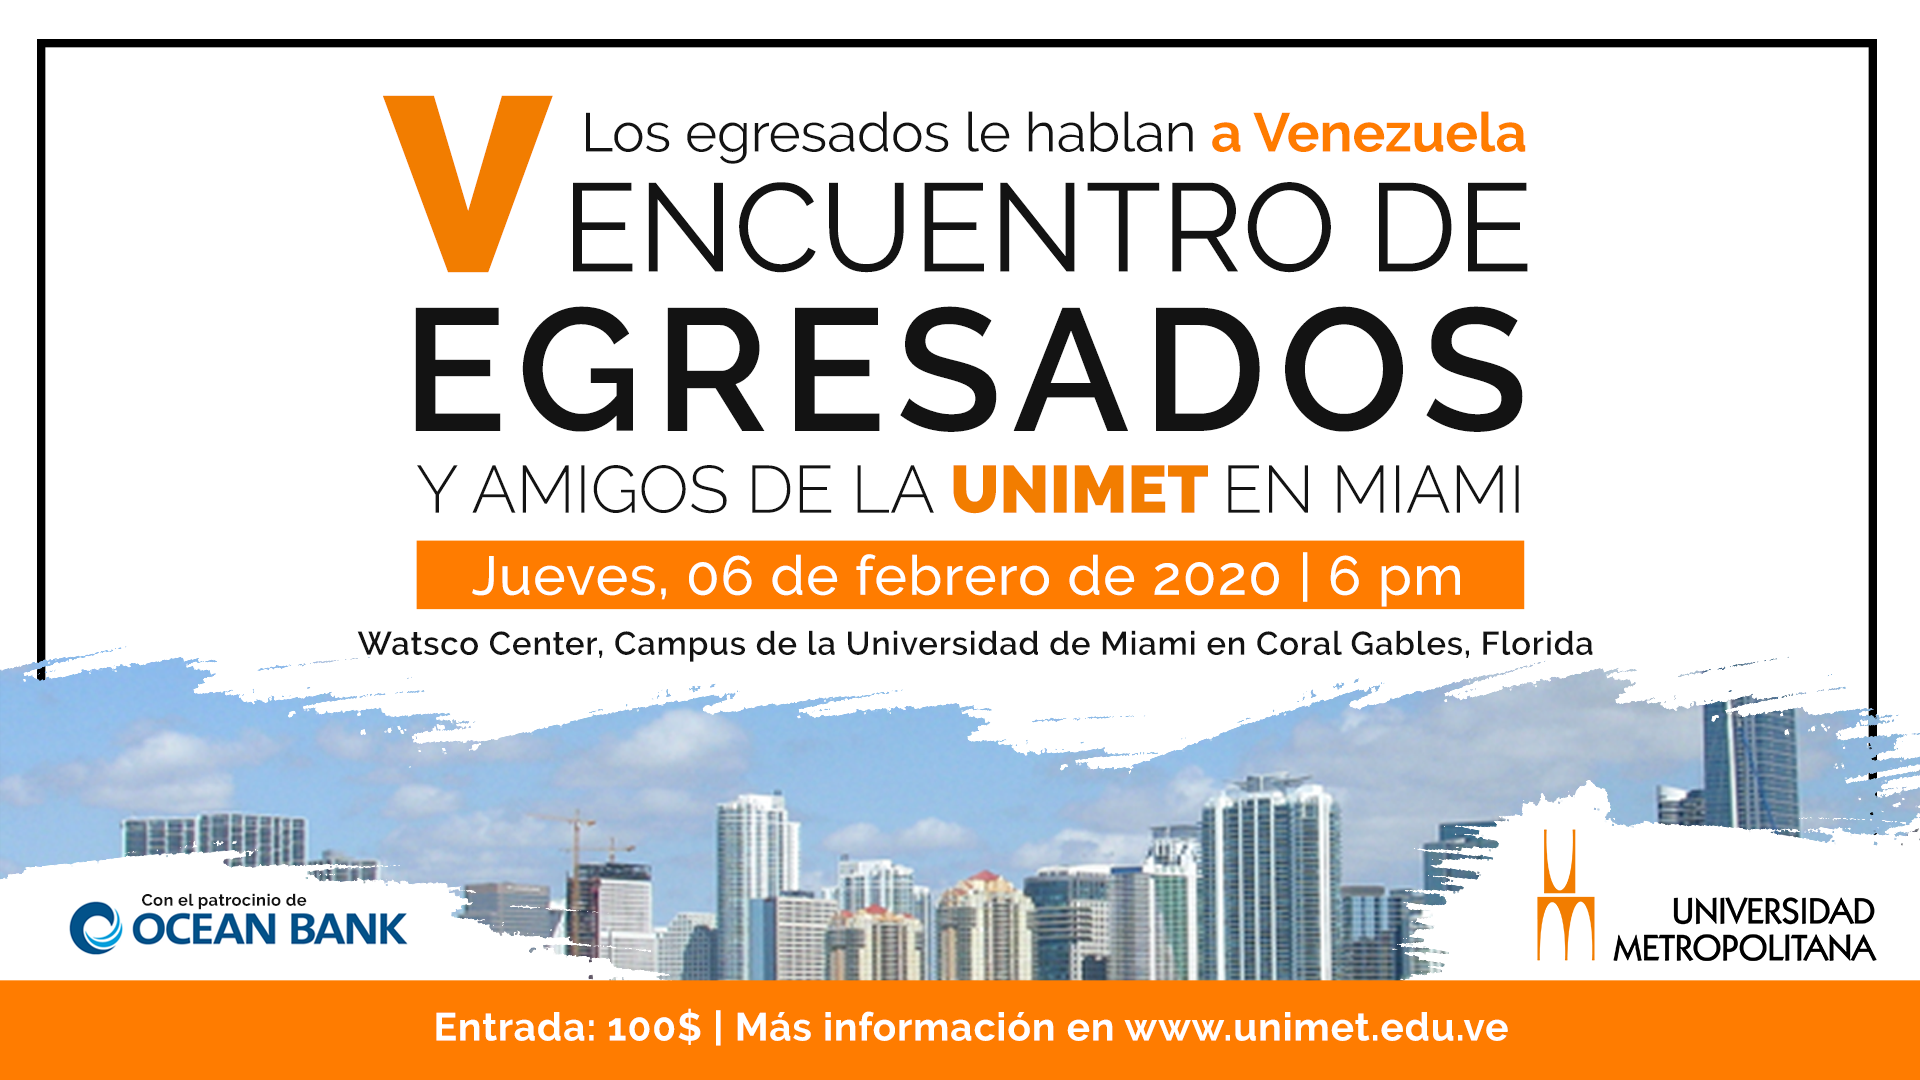 Este 6 de febrero los egresados de la Universidad Metropolitana “Le hablarán a Venezuela” en Miami